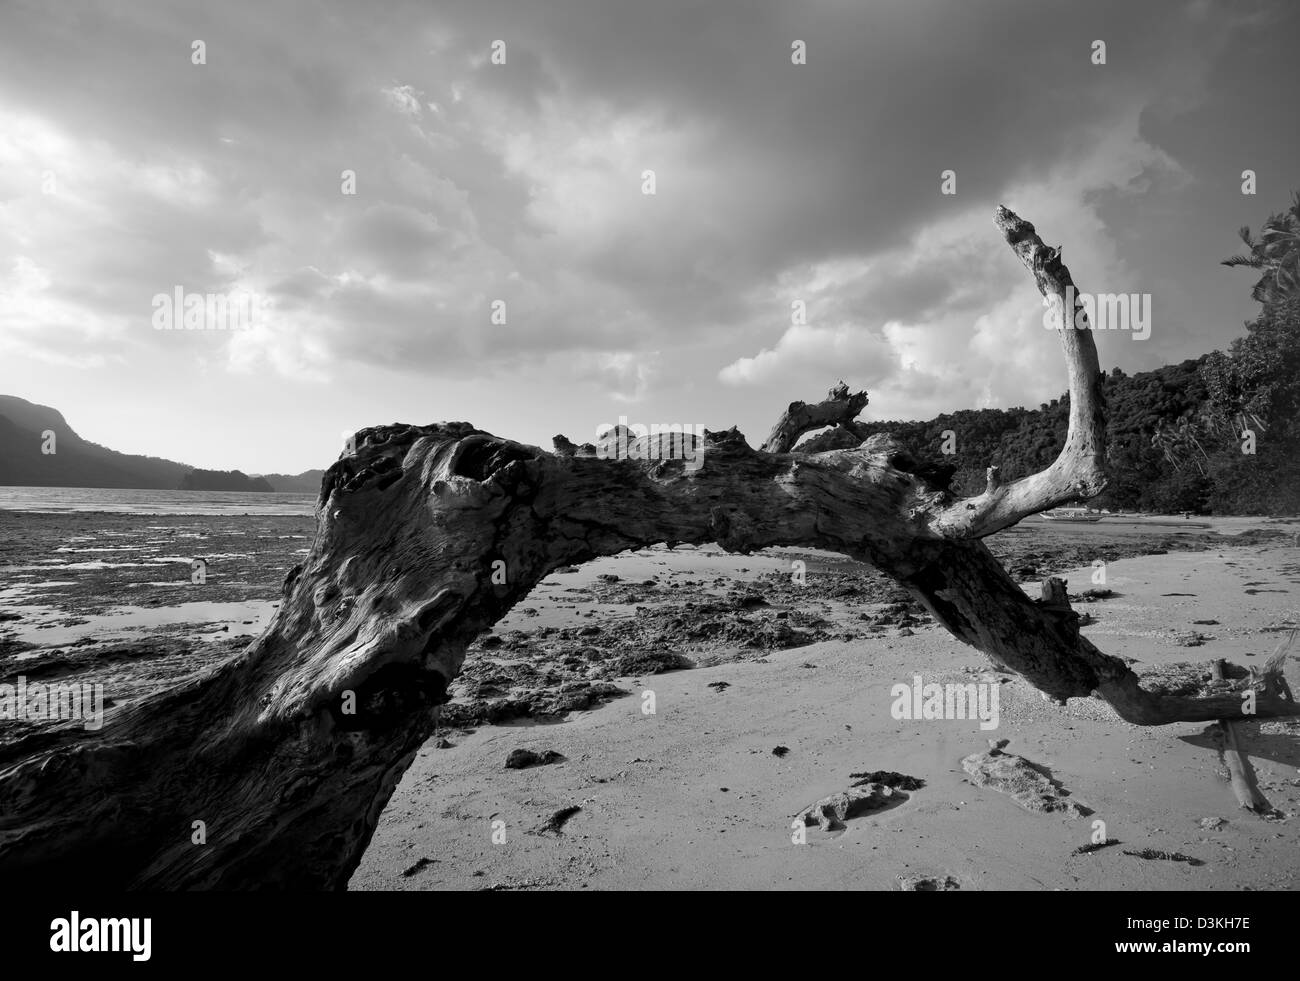 Albero morto in spiaggia, in bianco e nero tonica. Foto Stock